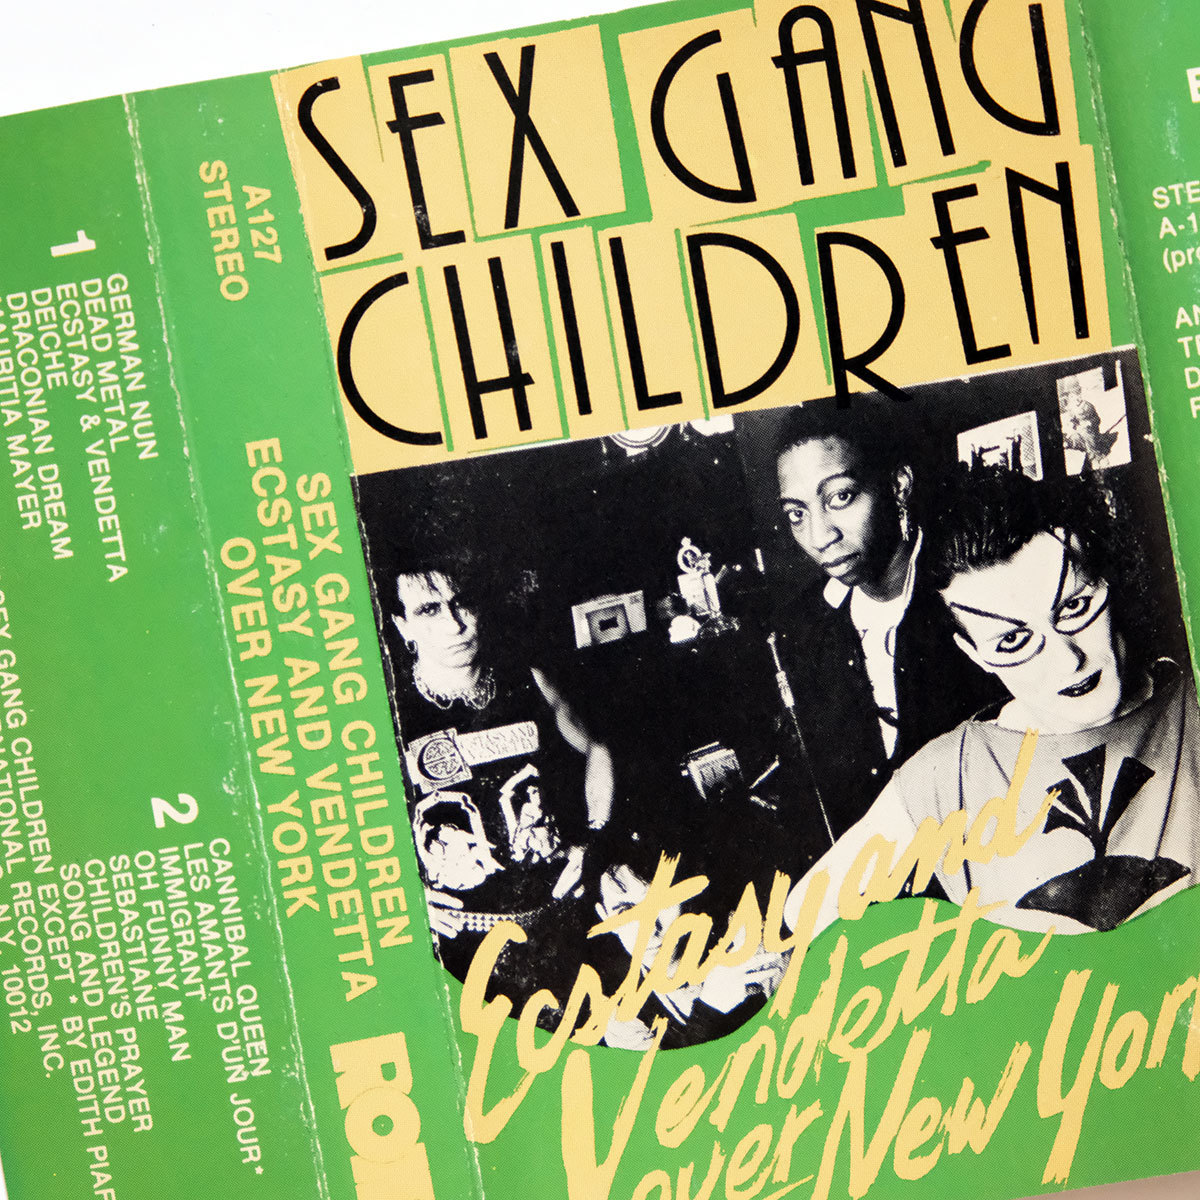 {US version cassette tape }Sex Gang Children*Ecstacy And Vendetta Over New York* sex gang children /ROIR